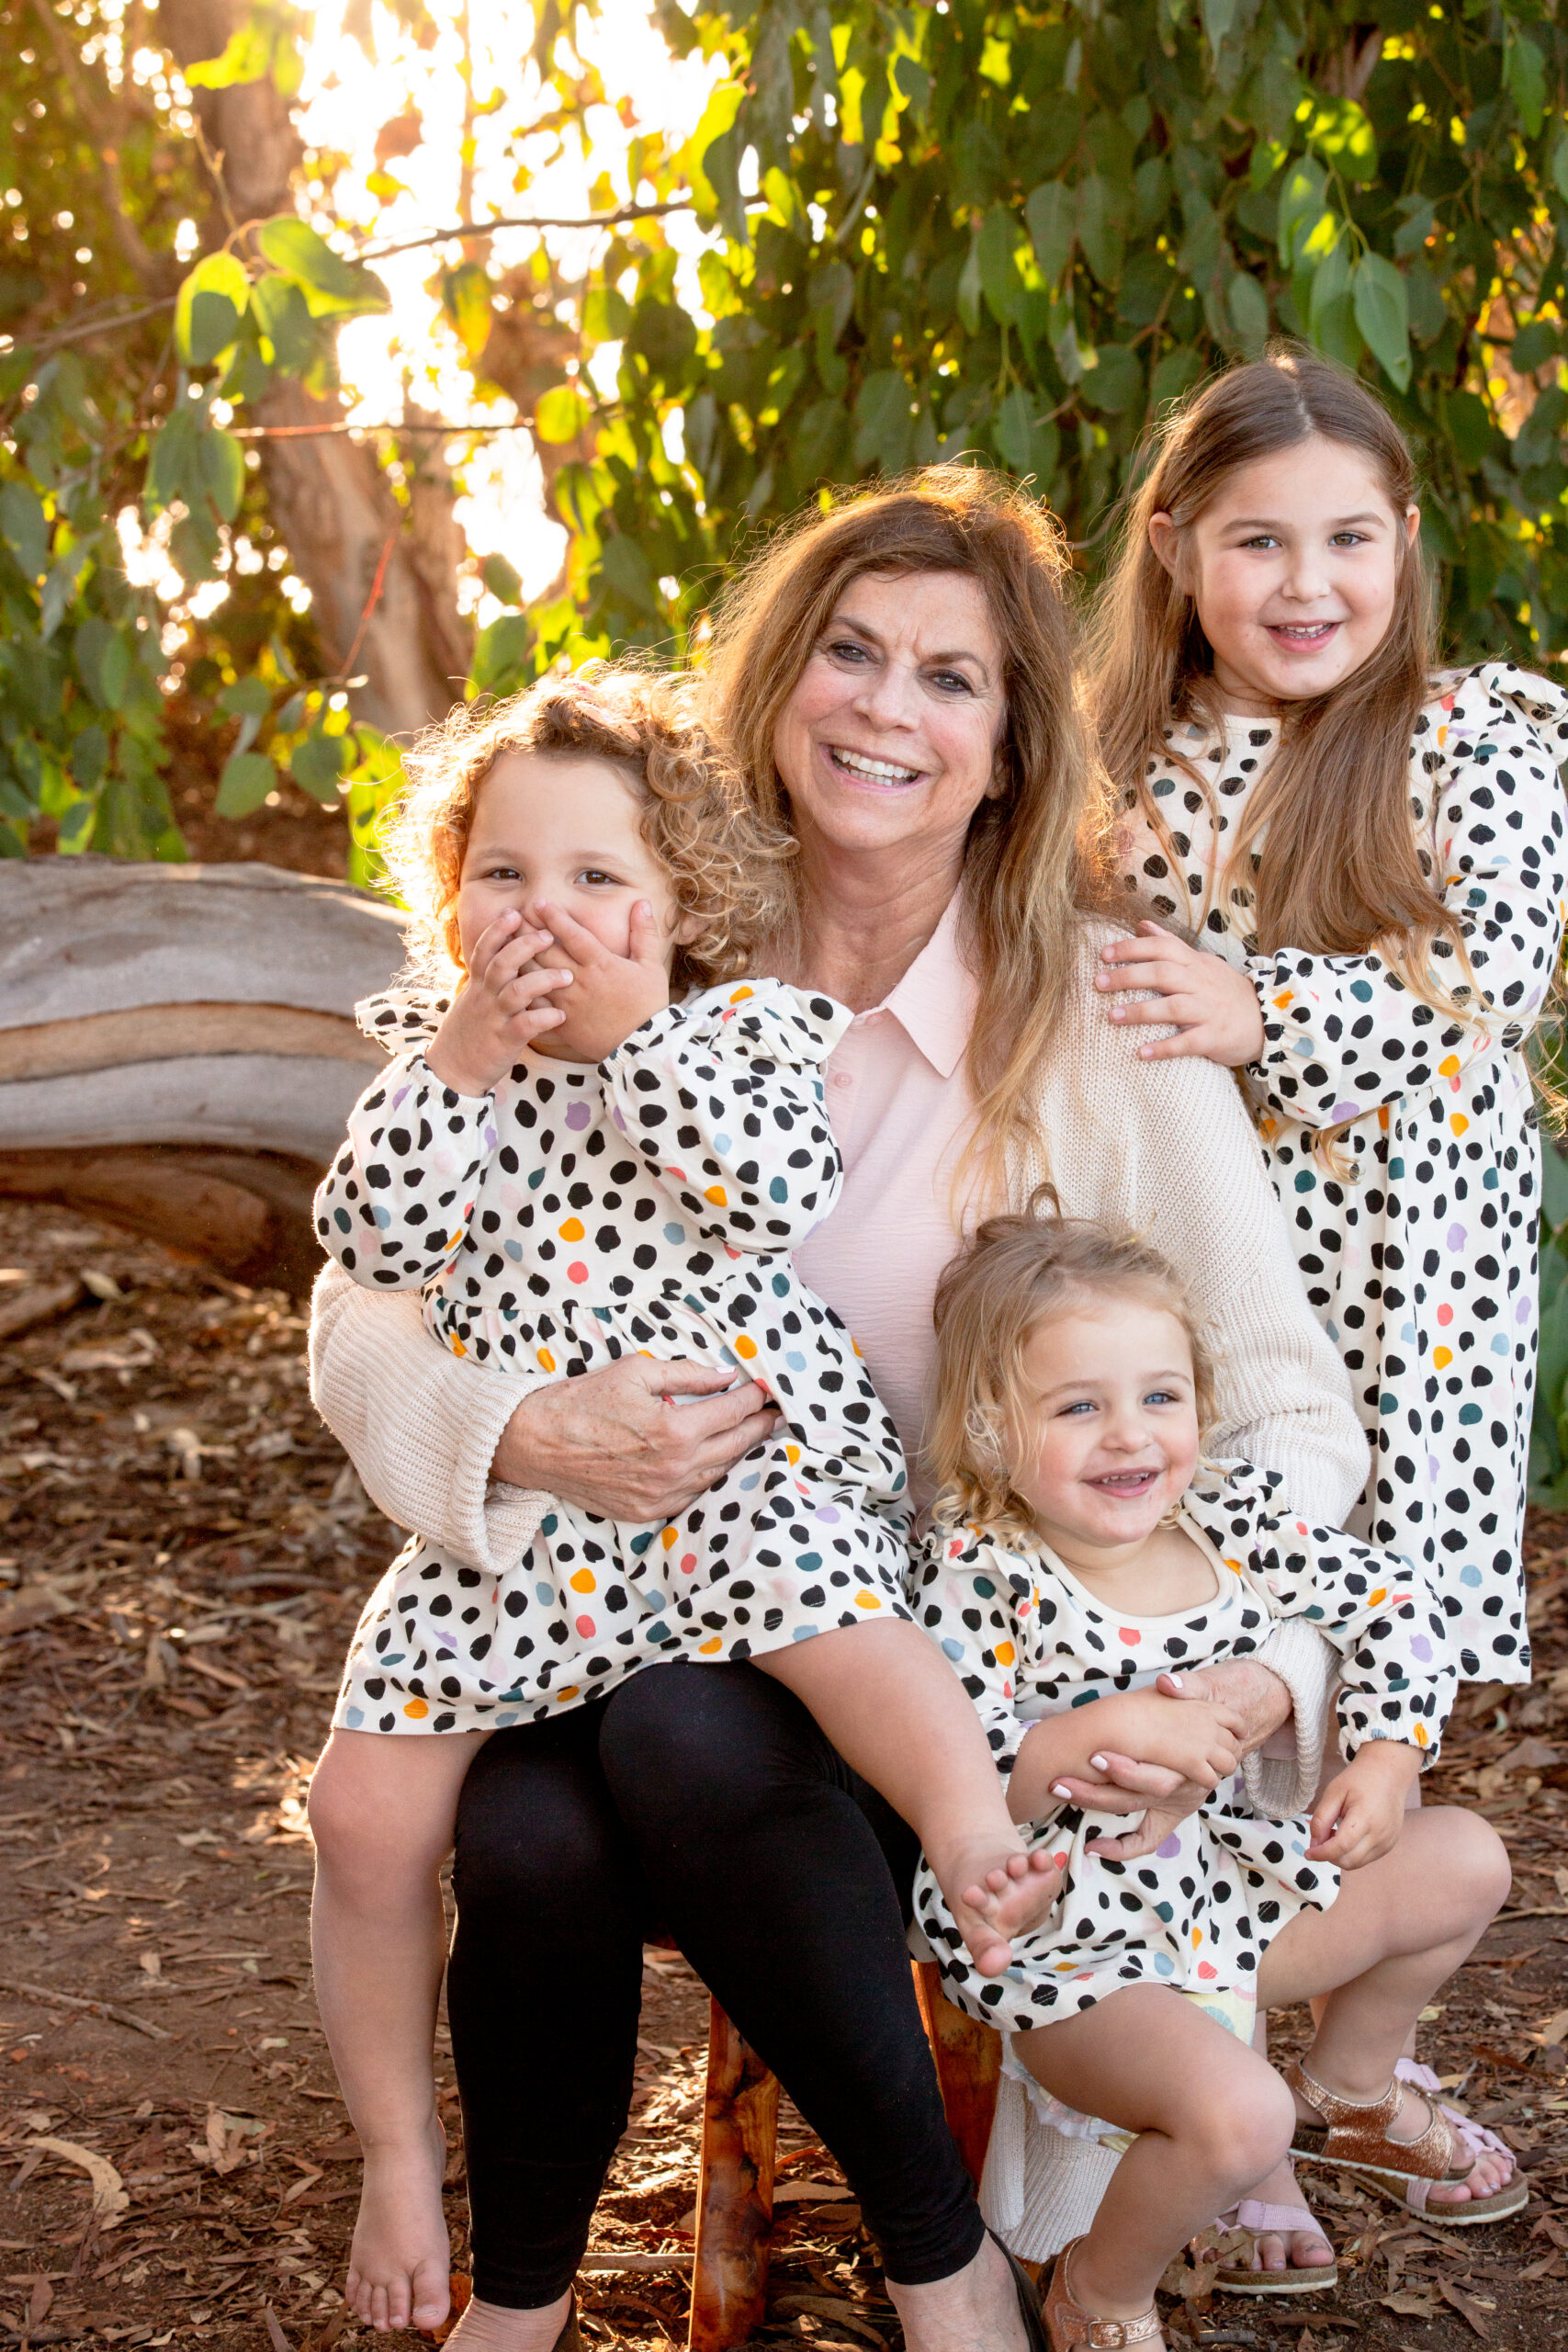 Santa Barbara sleep coaching Nancy with her 3 granddaughters.